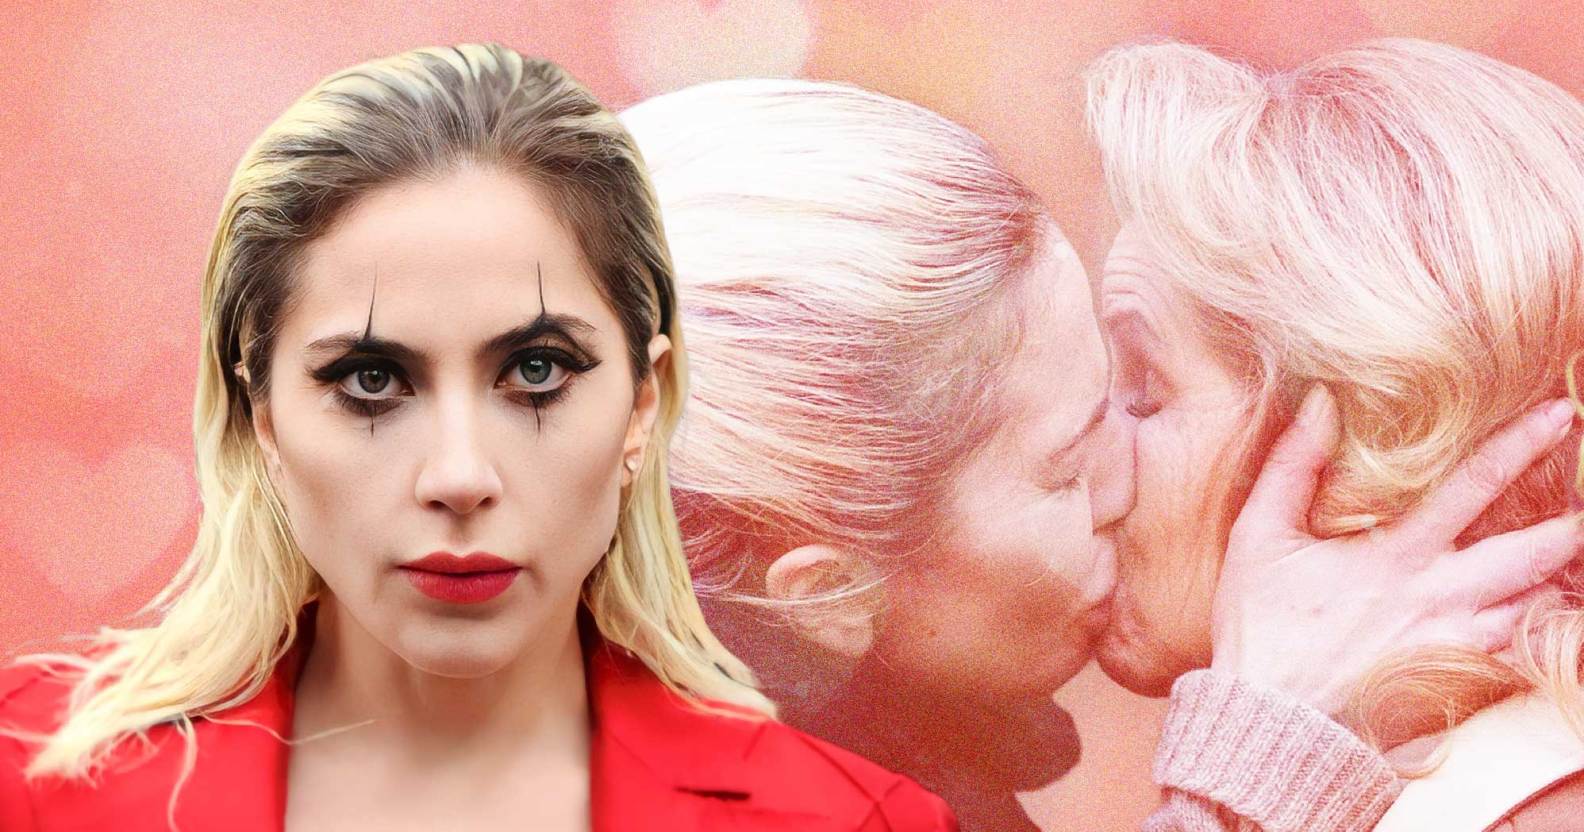 Джокер 2: Леди Гага в образе Харли Квинн и её поцелуй с ненавистницей